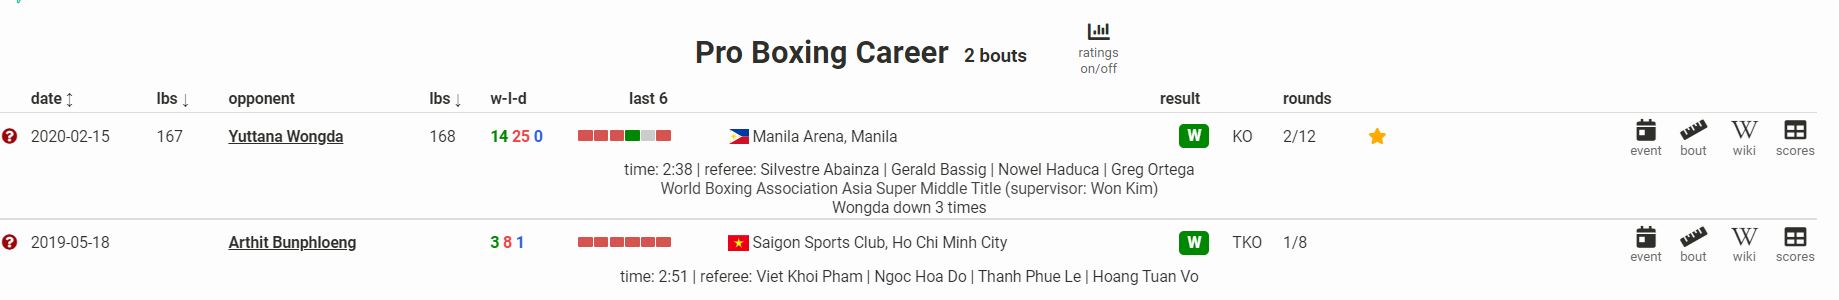 Trận thắng đai Boxing WBA Đông Á của Trương Đình Hoàng không được ghi nhận trên BoxRec? - Ảnh 2